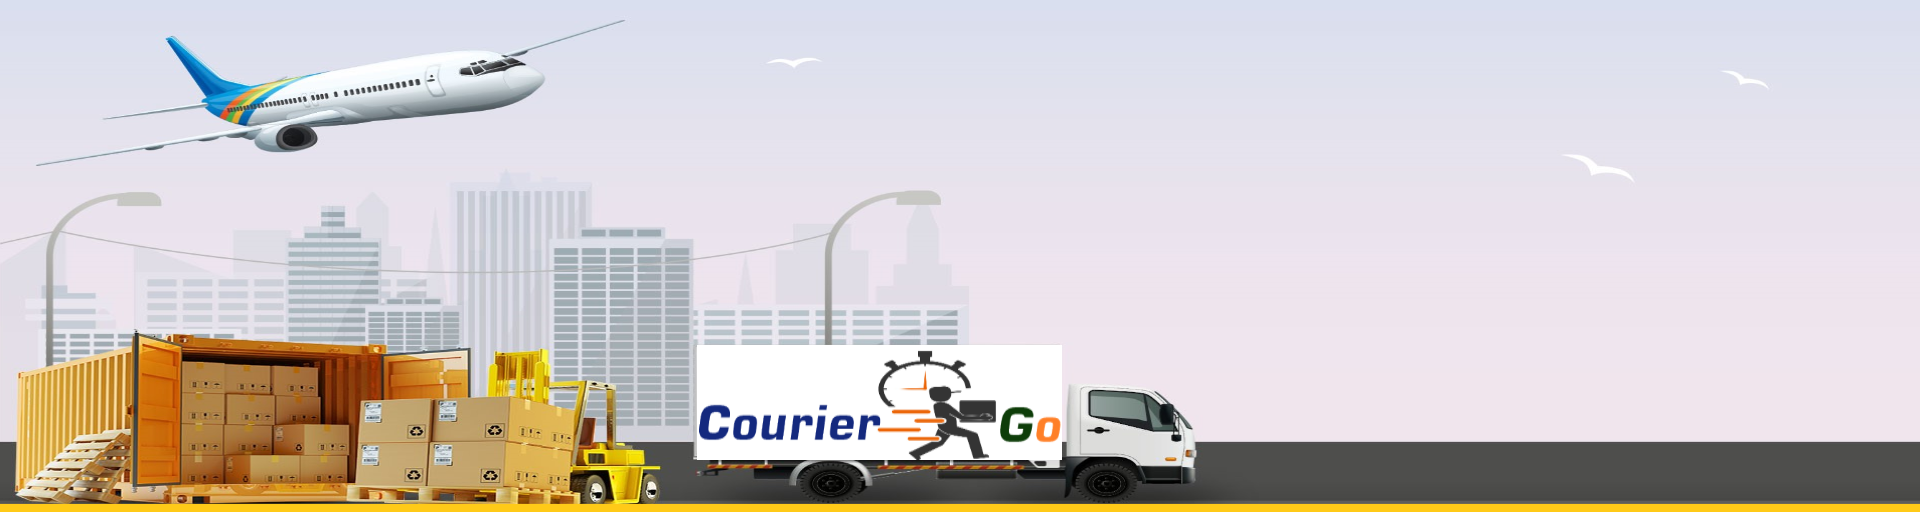 International Courier Services In Delhi, Jaipur, Mumbai, Lucknow, Chandigarh, Bengaluru